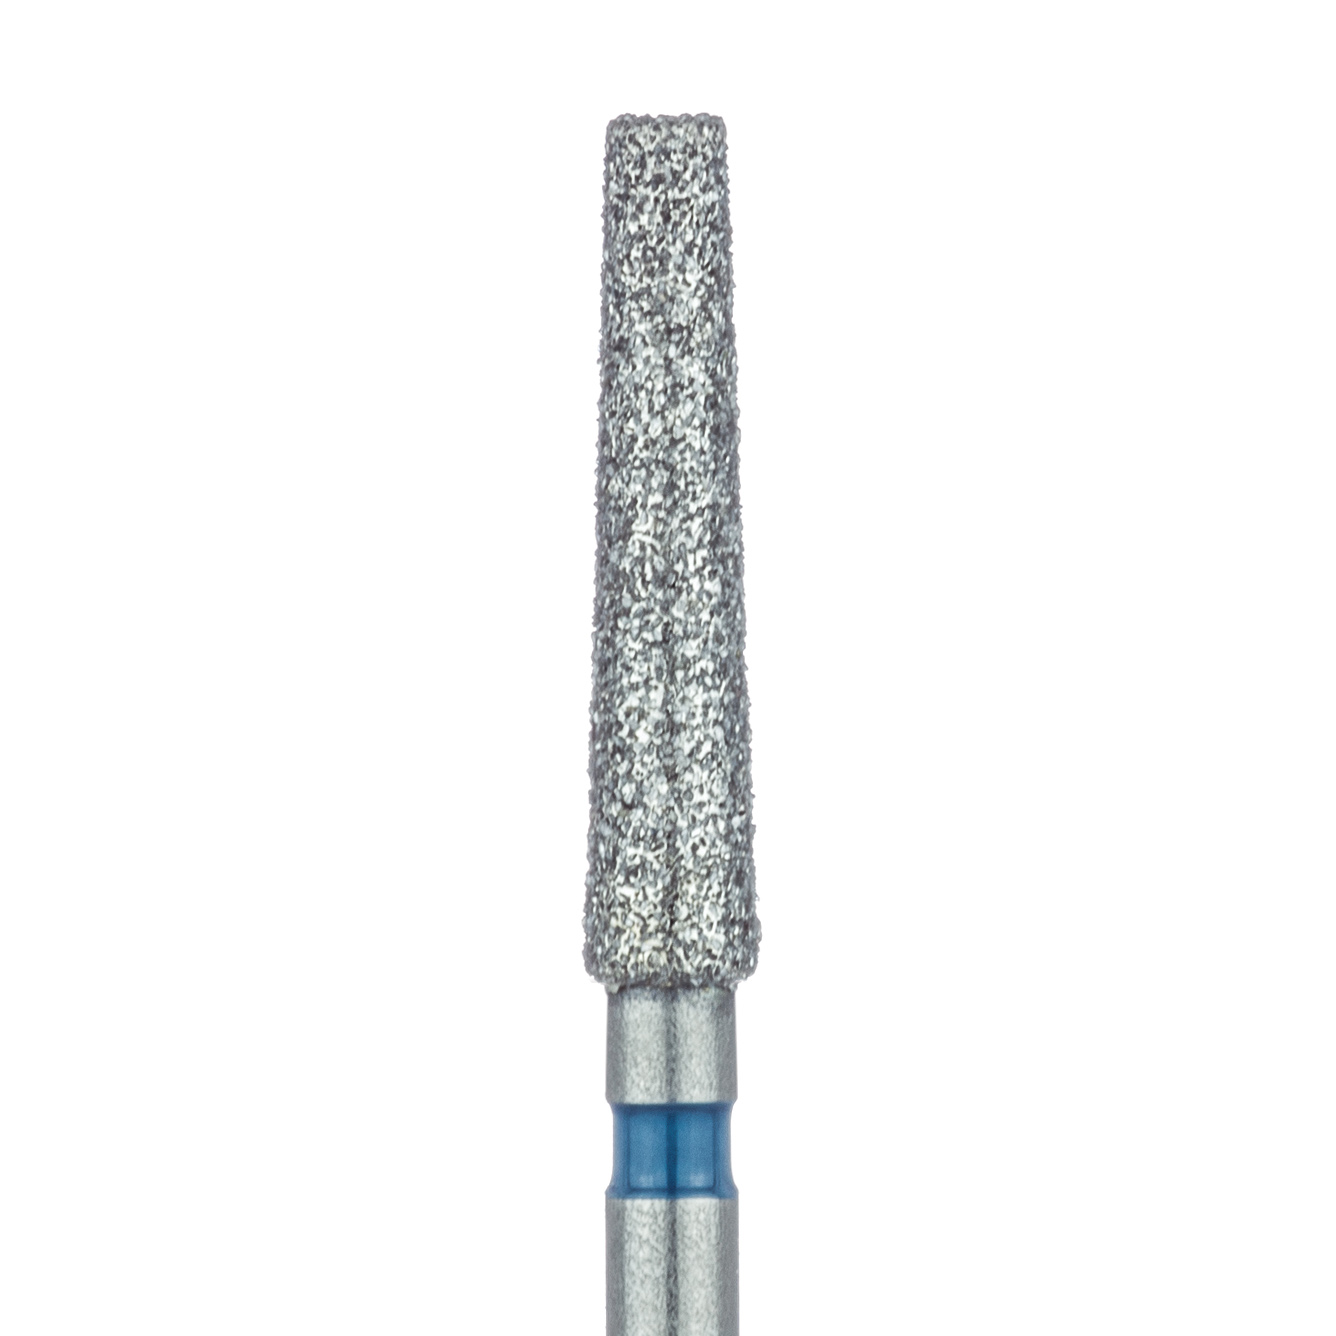 848-021-FG Extra Long Tapered Flat End Diamond Bur, 2.1mm Ø, Medium, 1.4mm Tip Ø, FG